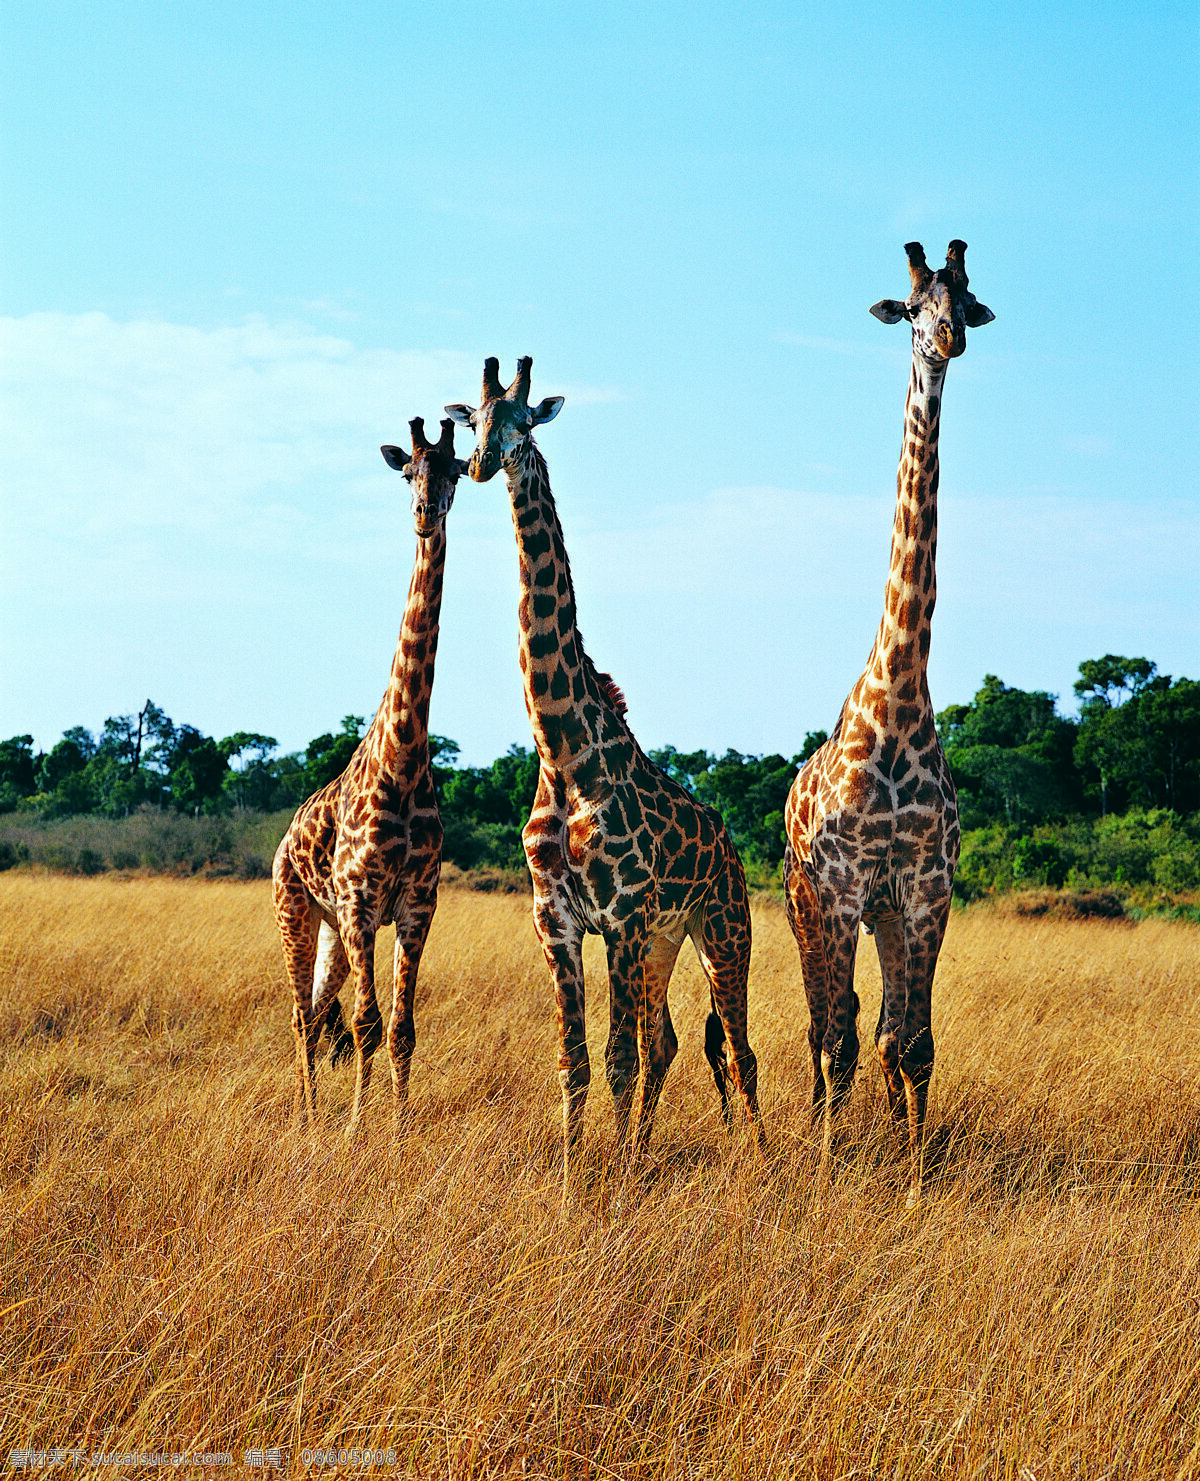 草原的长颈鹿 长颈鹿 草原动物 食草动物 非洲动物 狂野的非洲 野生动物 保护动物 动物世界 非洲草原 动物研究 地球动物 可爱的家园 环保问题 公益组织 生物世界